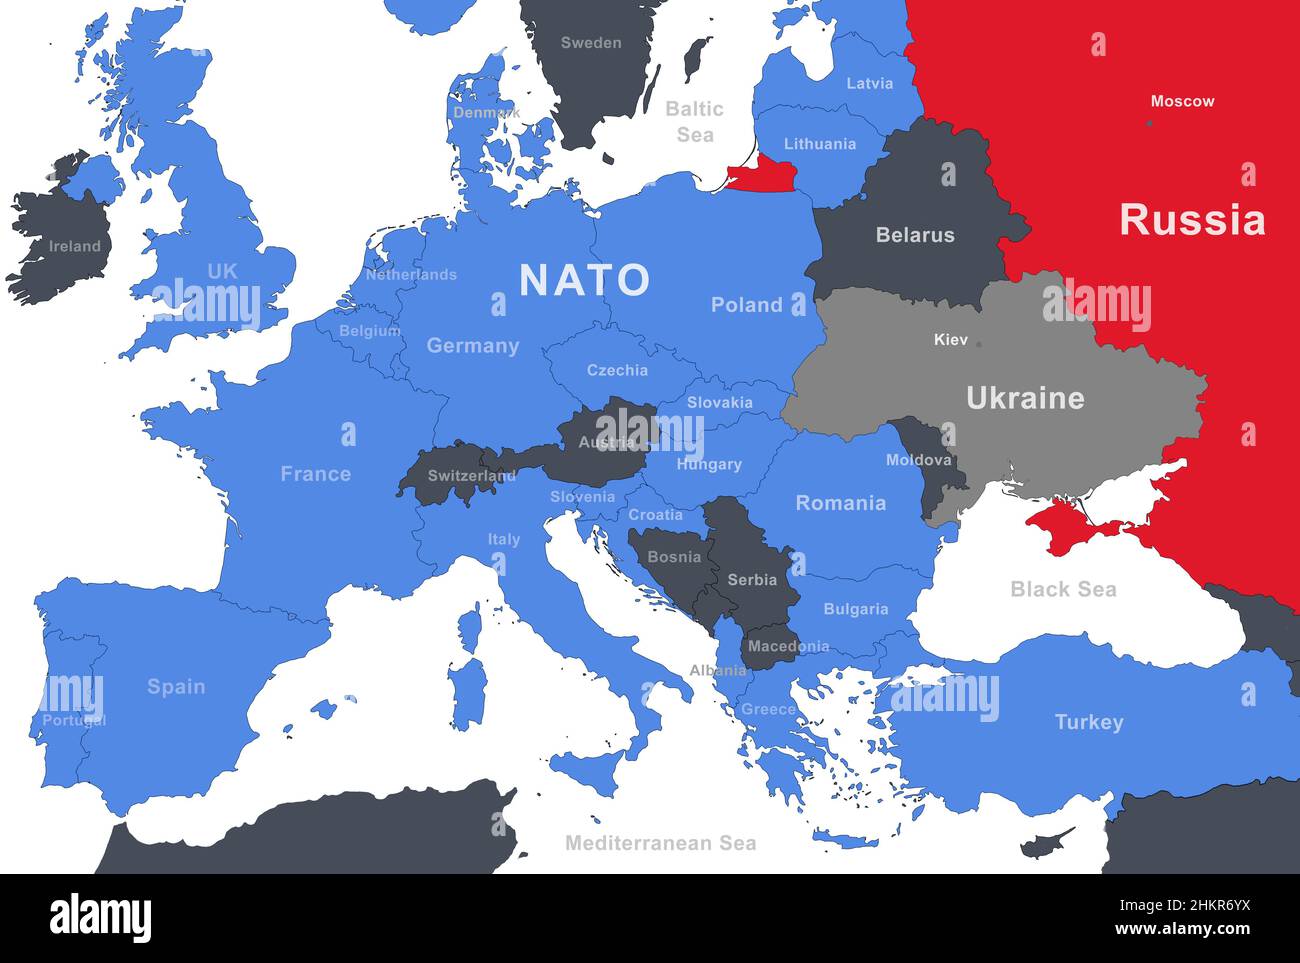 La Russie, l'OTAN et l'Ukraine sur la carte de l'Europe.La Russie a frontière sur la carte politico-militaire avec la Biélorussie, la Pologne, l'Allemagne, la Turquie et d'autres pays.BA Banque D'Images